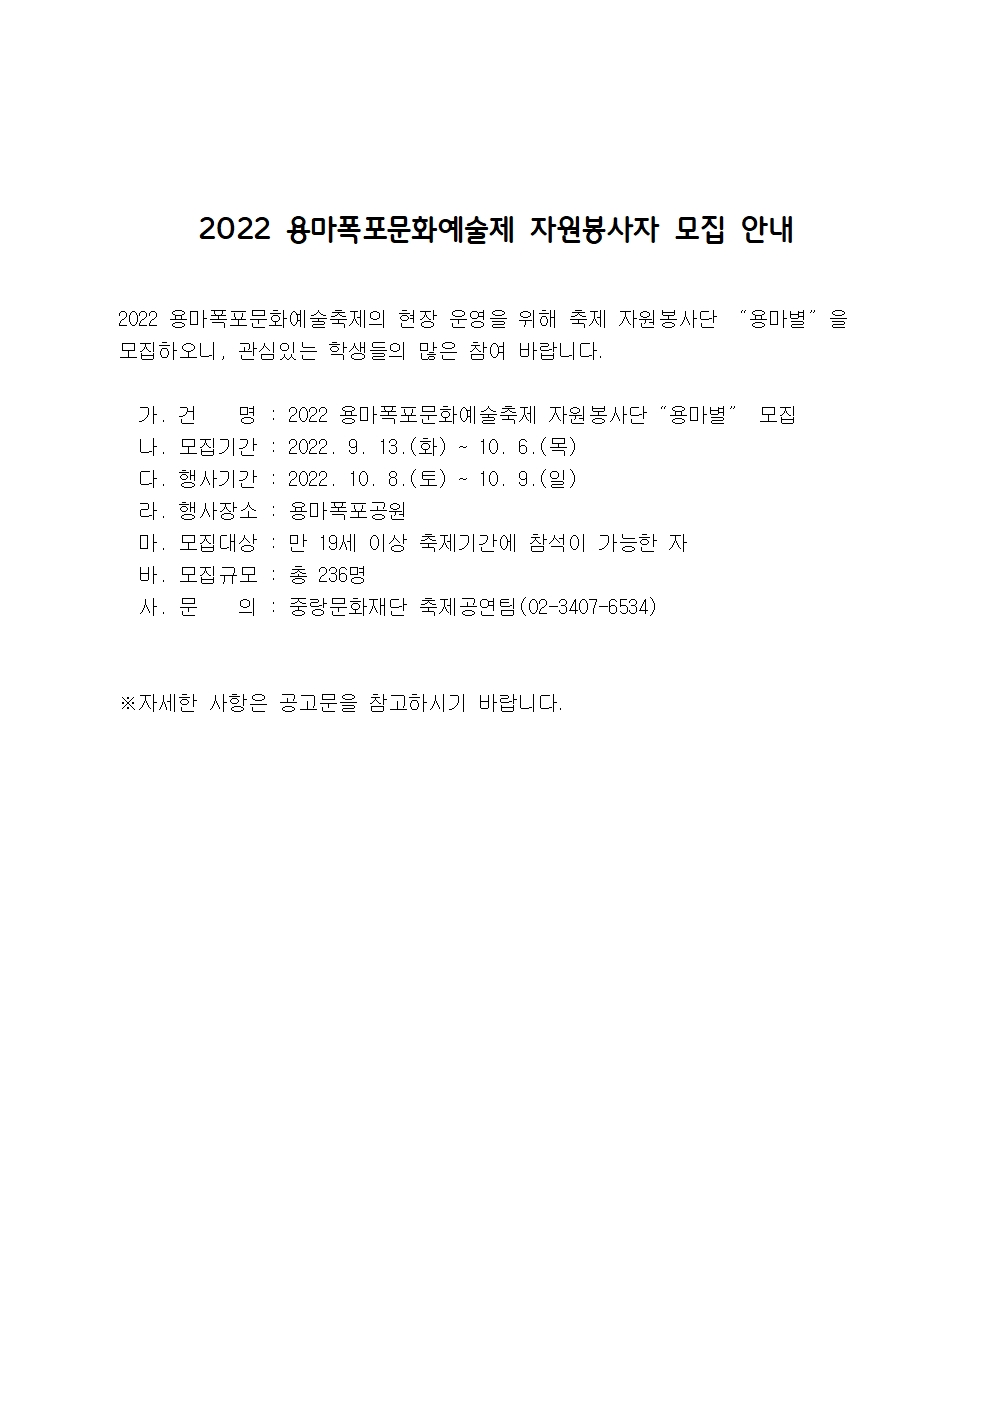 〔개별봉사〕2022 용마폭포문화예술제 자원봉사자 모집 안내